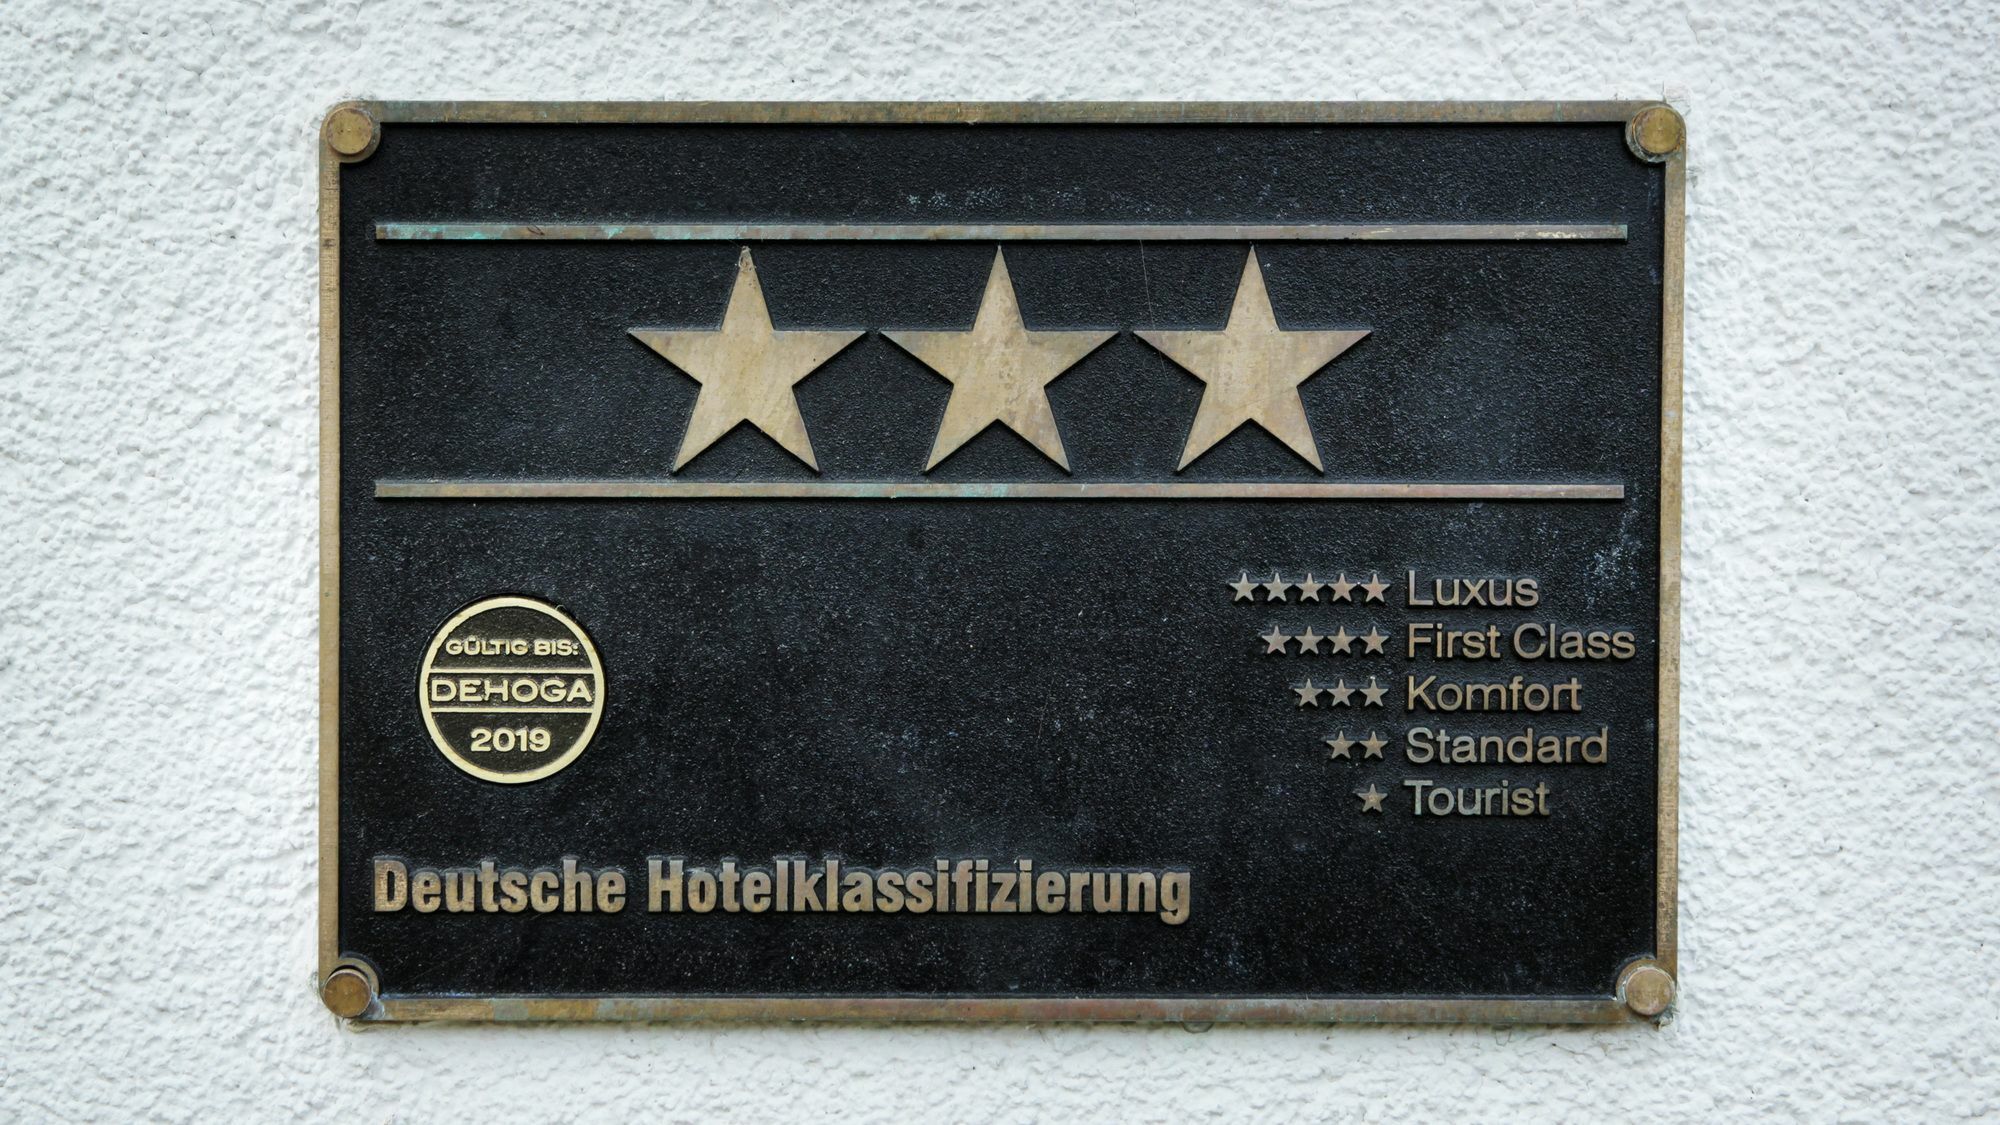 Hotel Bergedorfer Hohe 汉堡 外观 照片